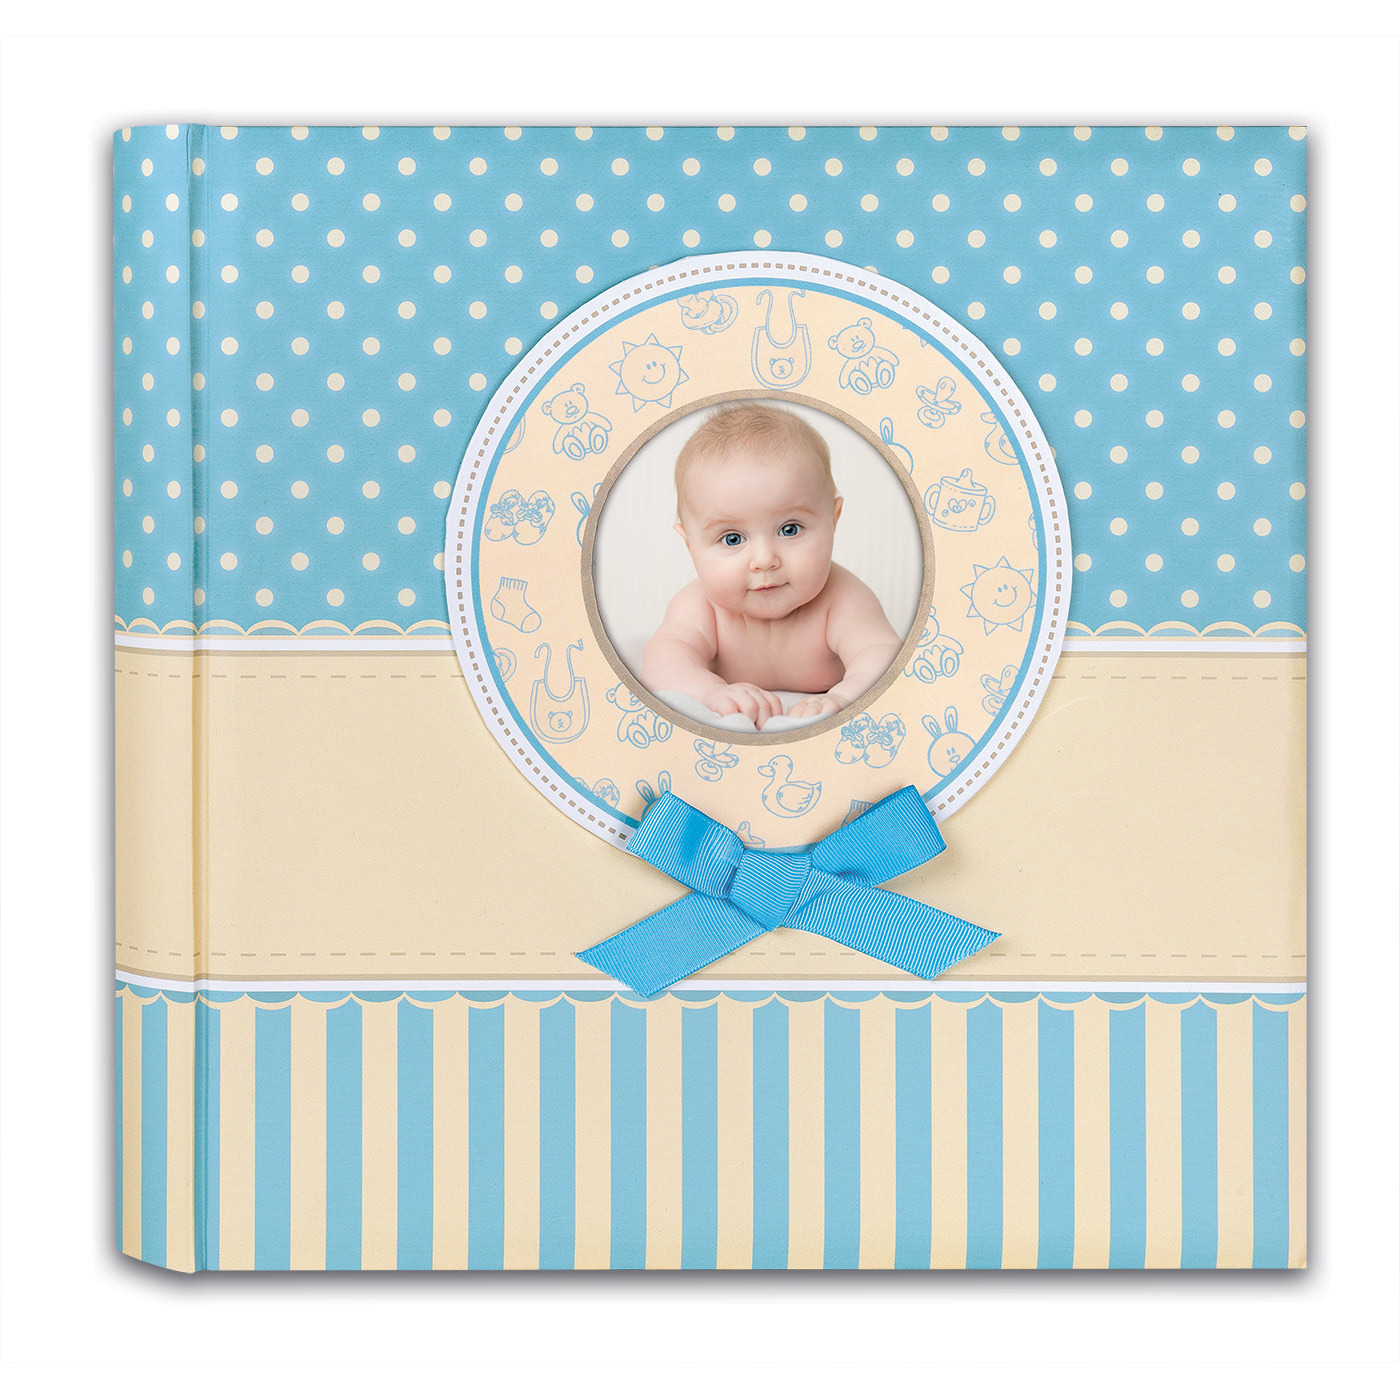 Fotoboek-fotoalbum Matilda baby jongetje met 30 paginas blauw 31 x 31 x 3,5 cm